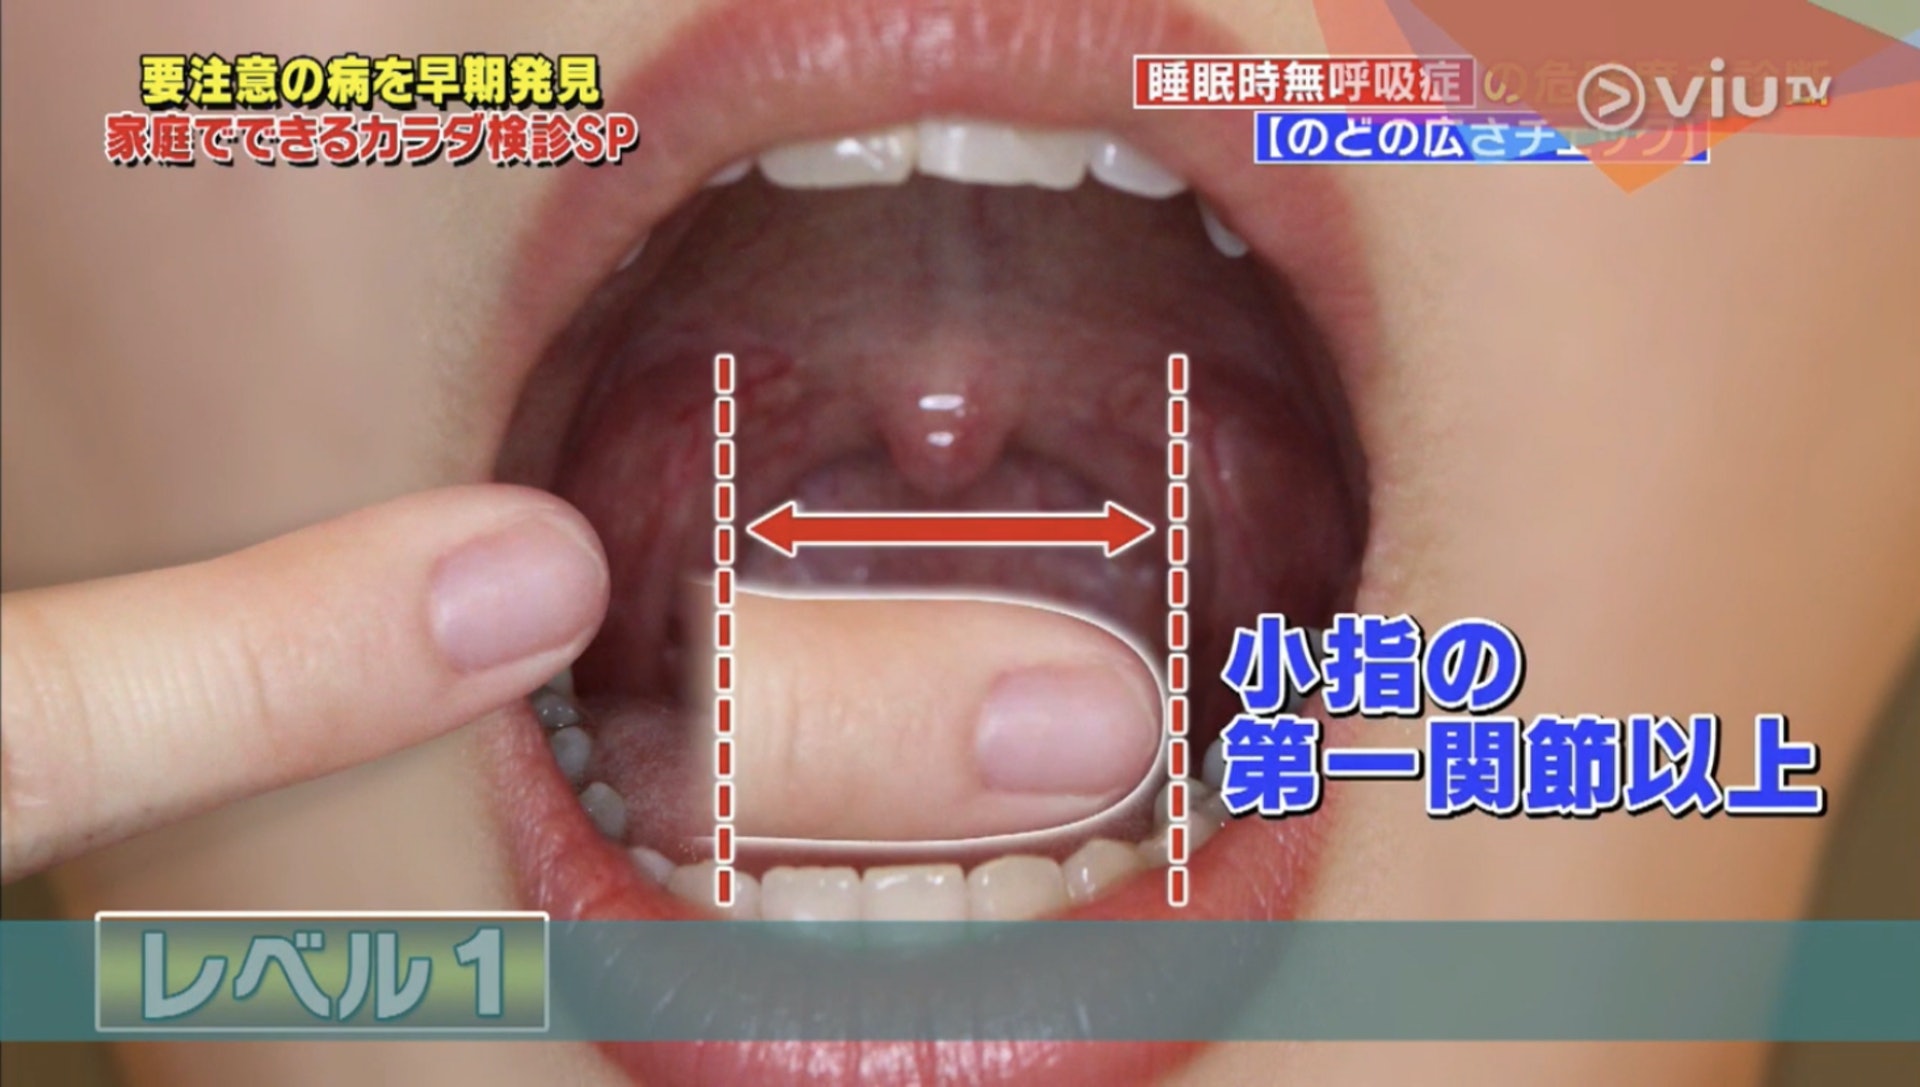 同時喉嚨開口左右的闊度長於尾指第一節（Viu TV《恐怖醫學》影片截圖）